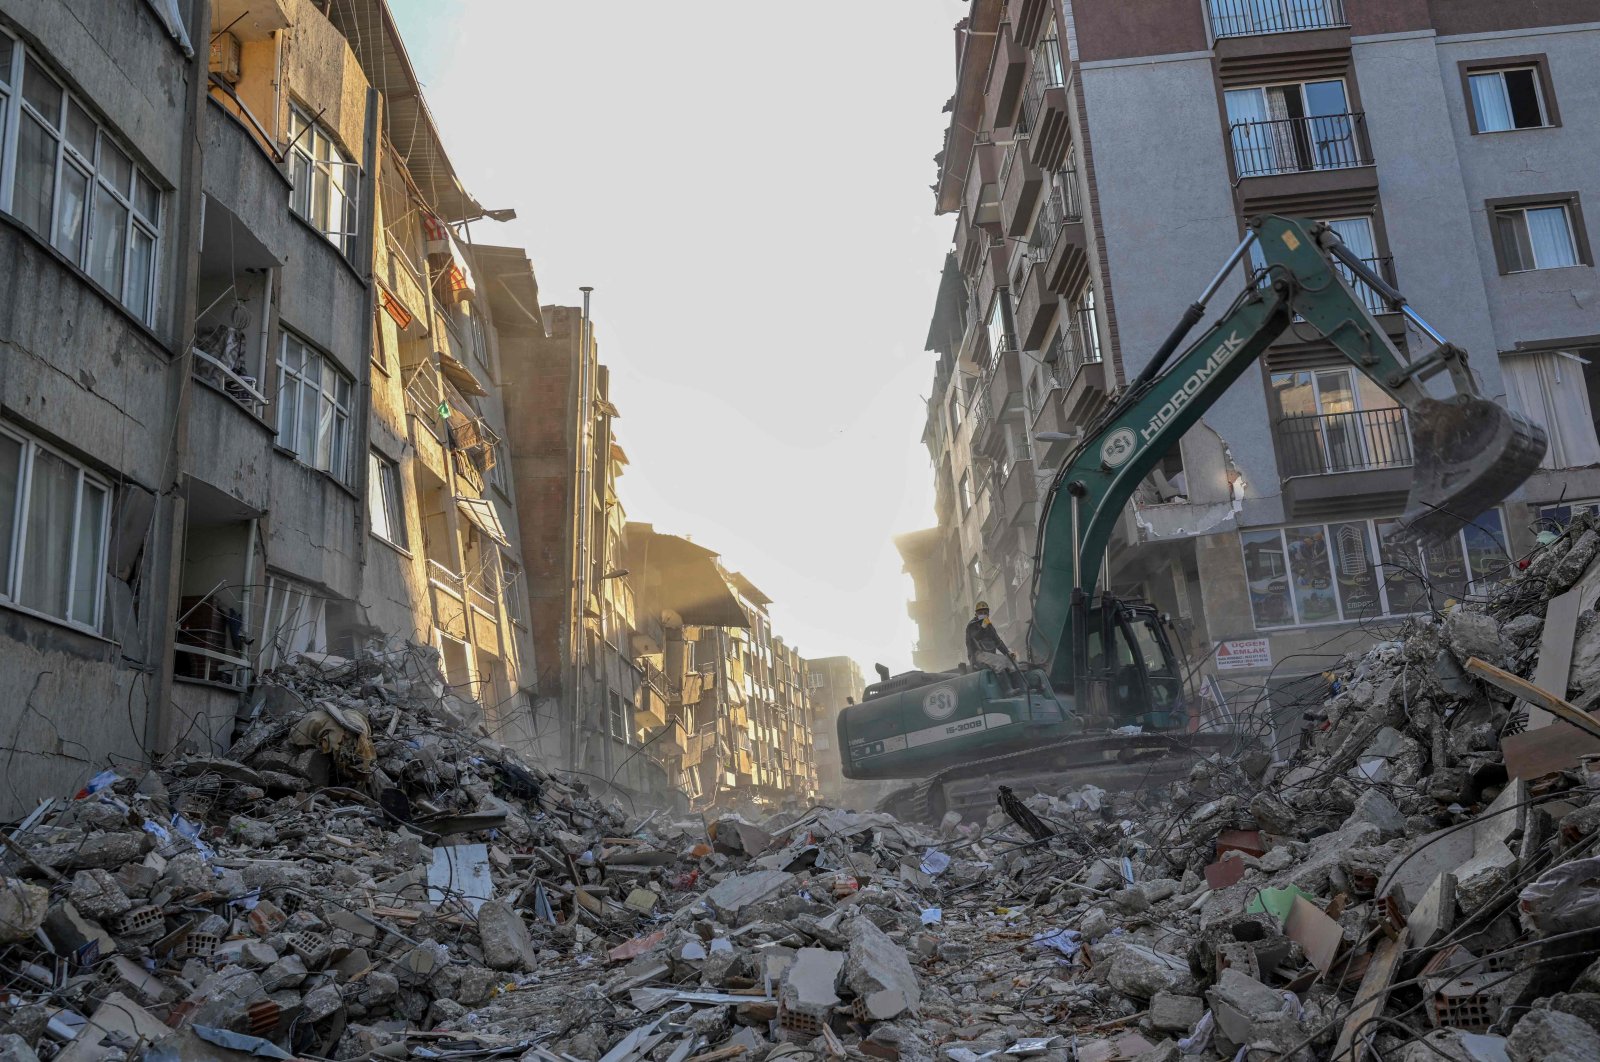 An excavator clears debris amid collapsed buildings in Hatay, Türkiye, Feb. 15, 2023. (AFP Photo)